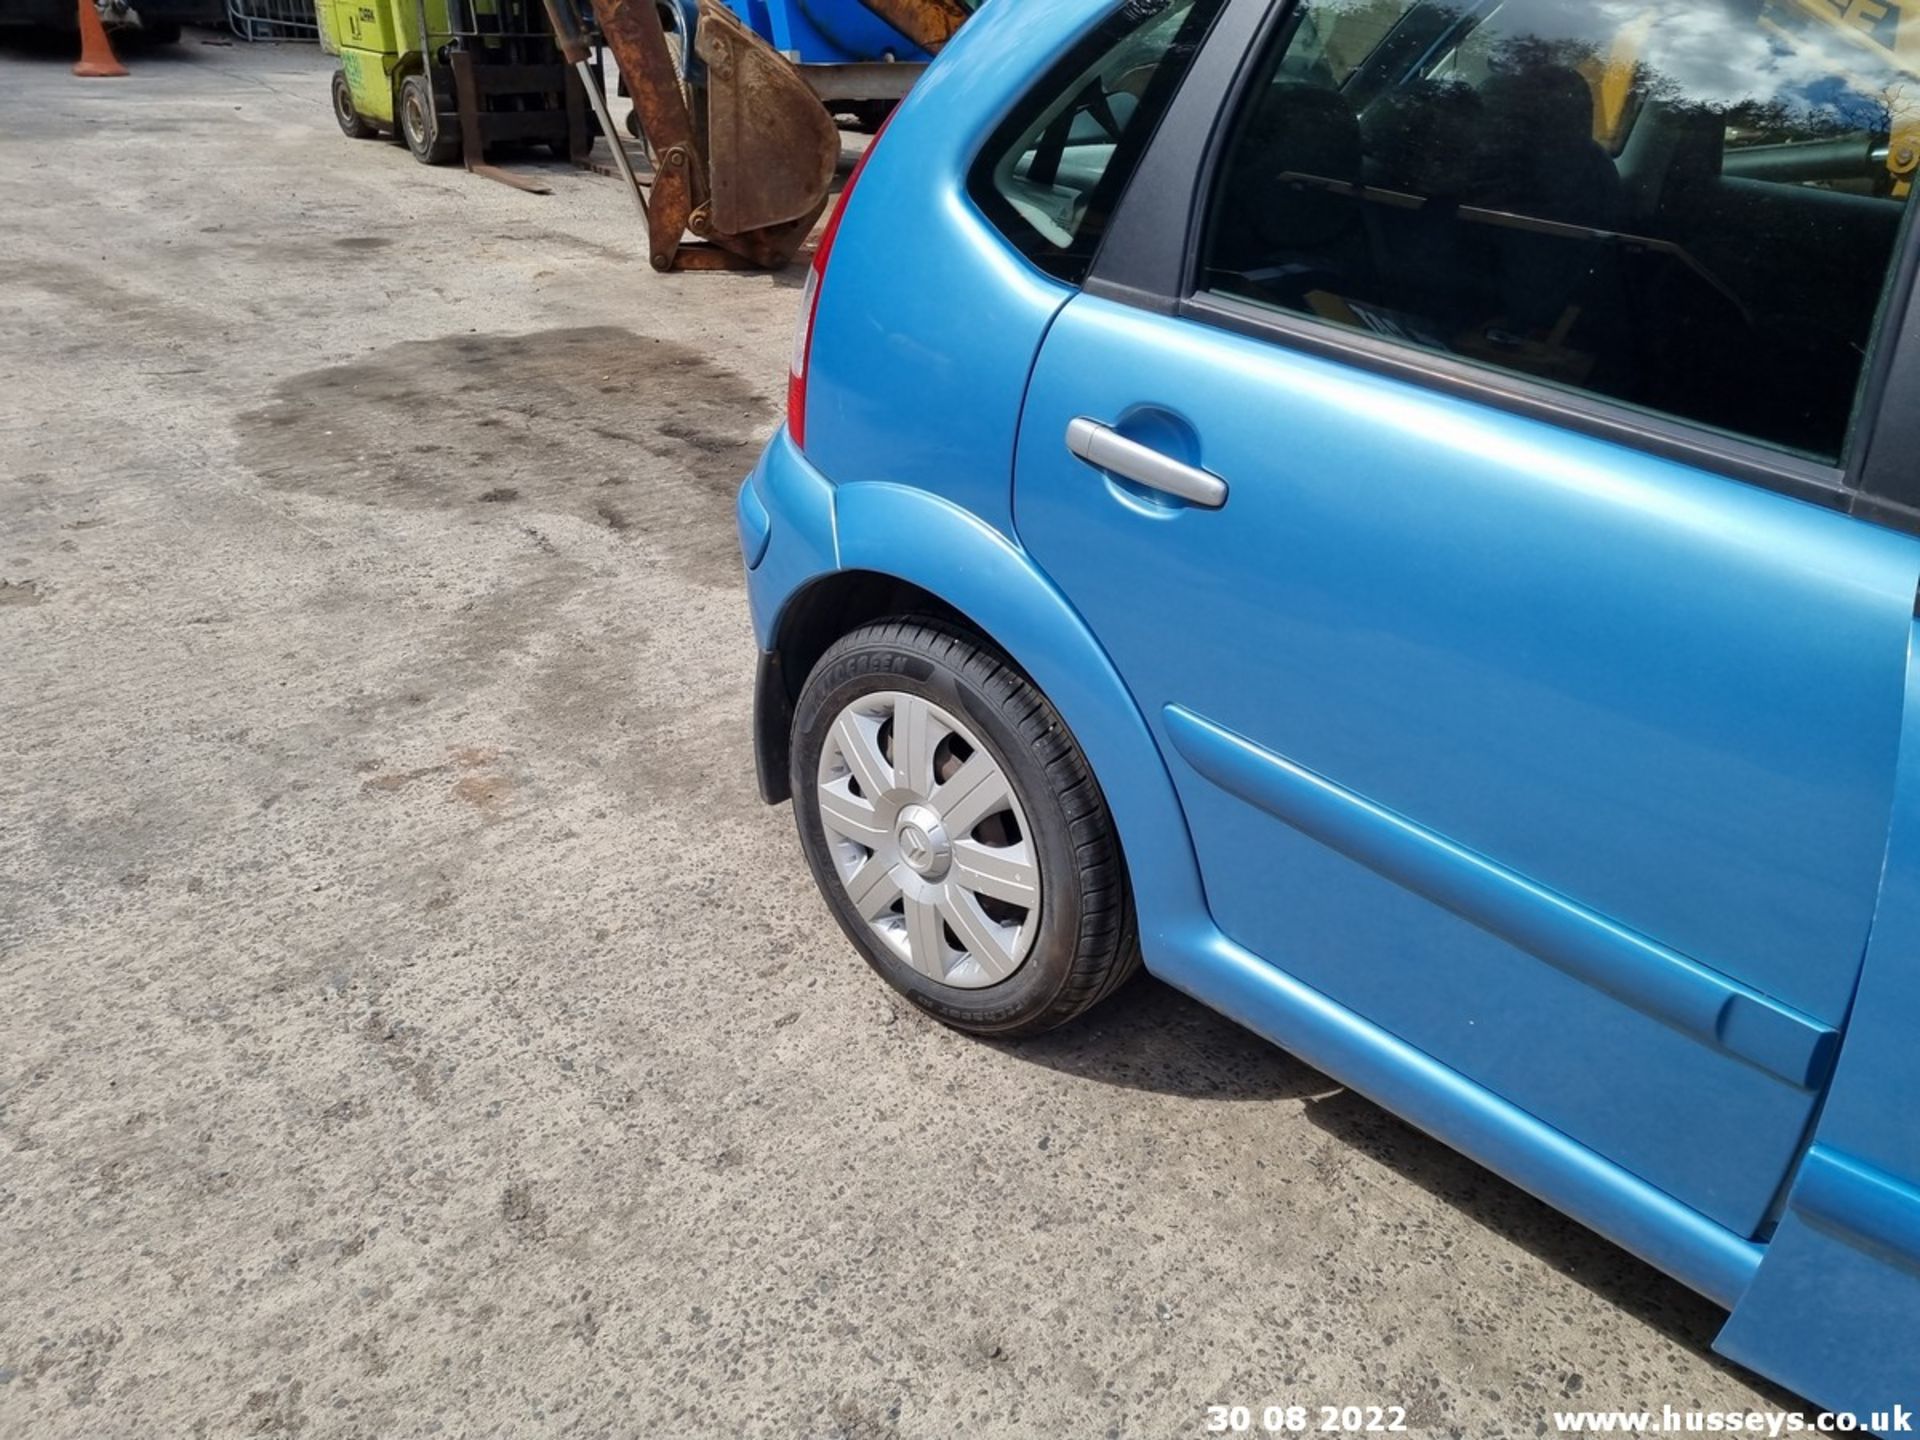 06/55 CITROEN C3 STOP&START SENSODRIVE - 1360cc 5dr Hatchback (Blue) - Image 28 of 32